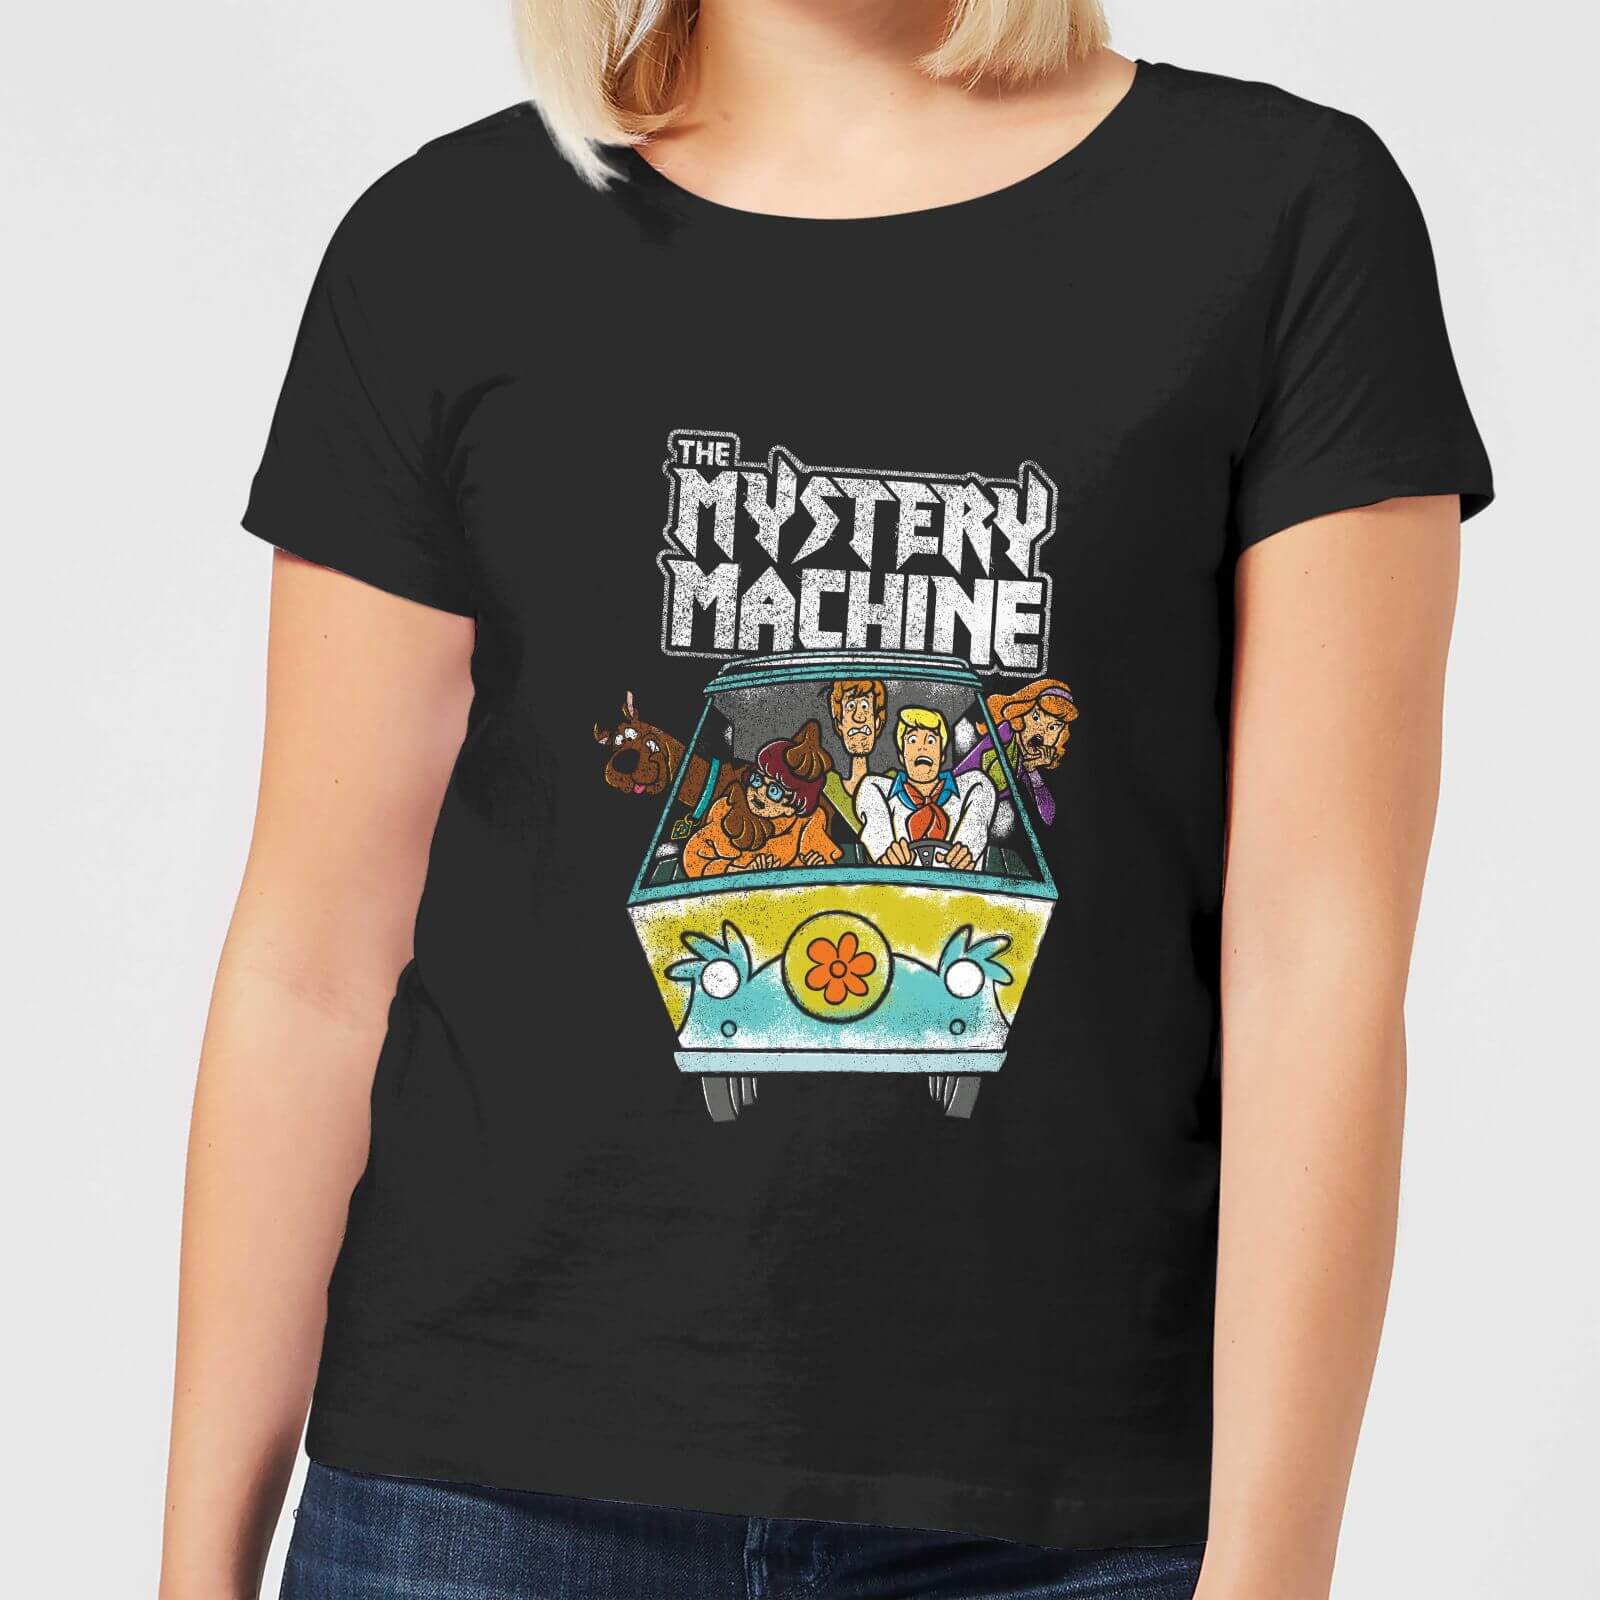 mystery machine shirt